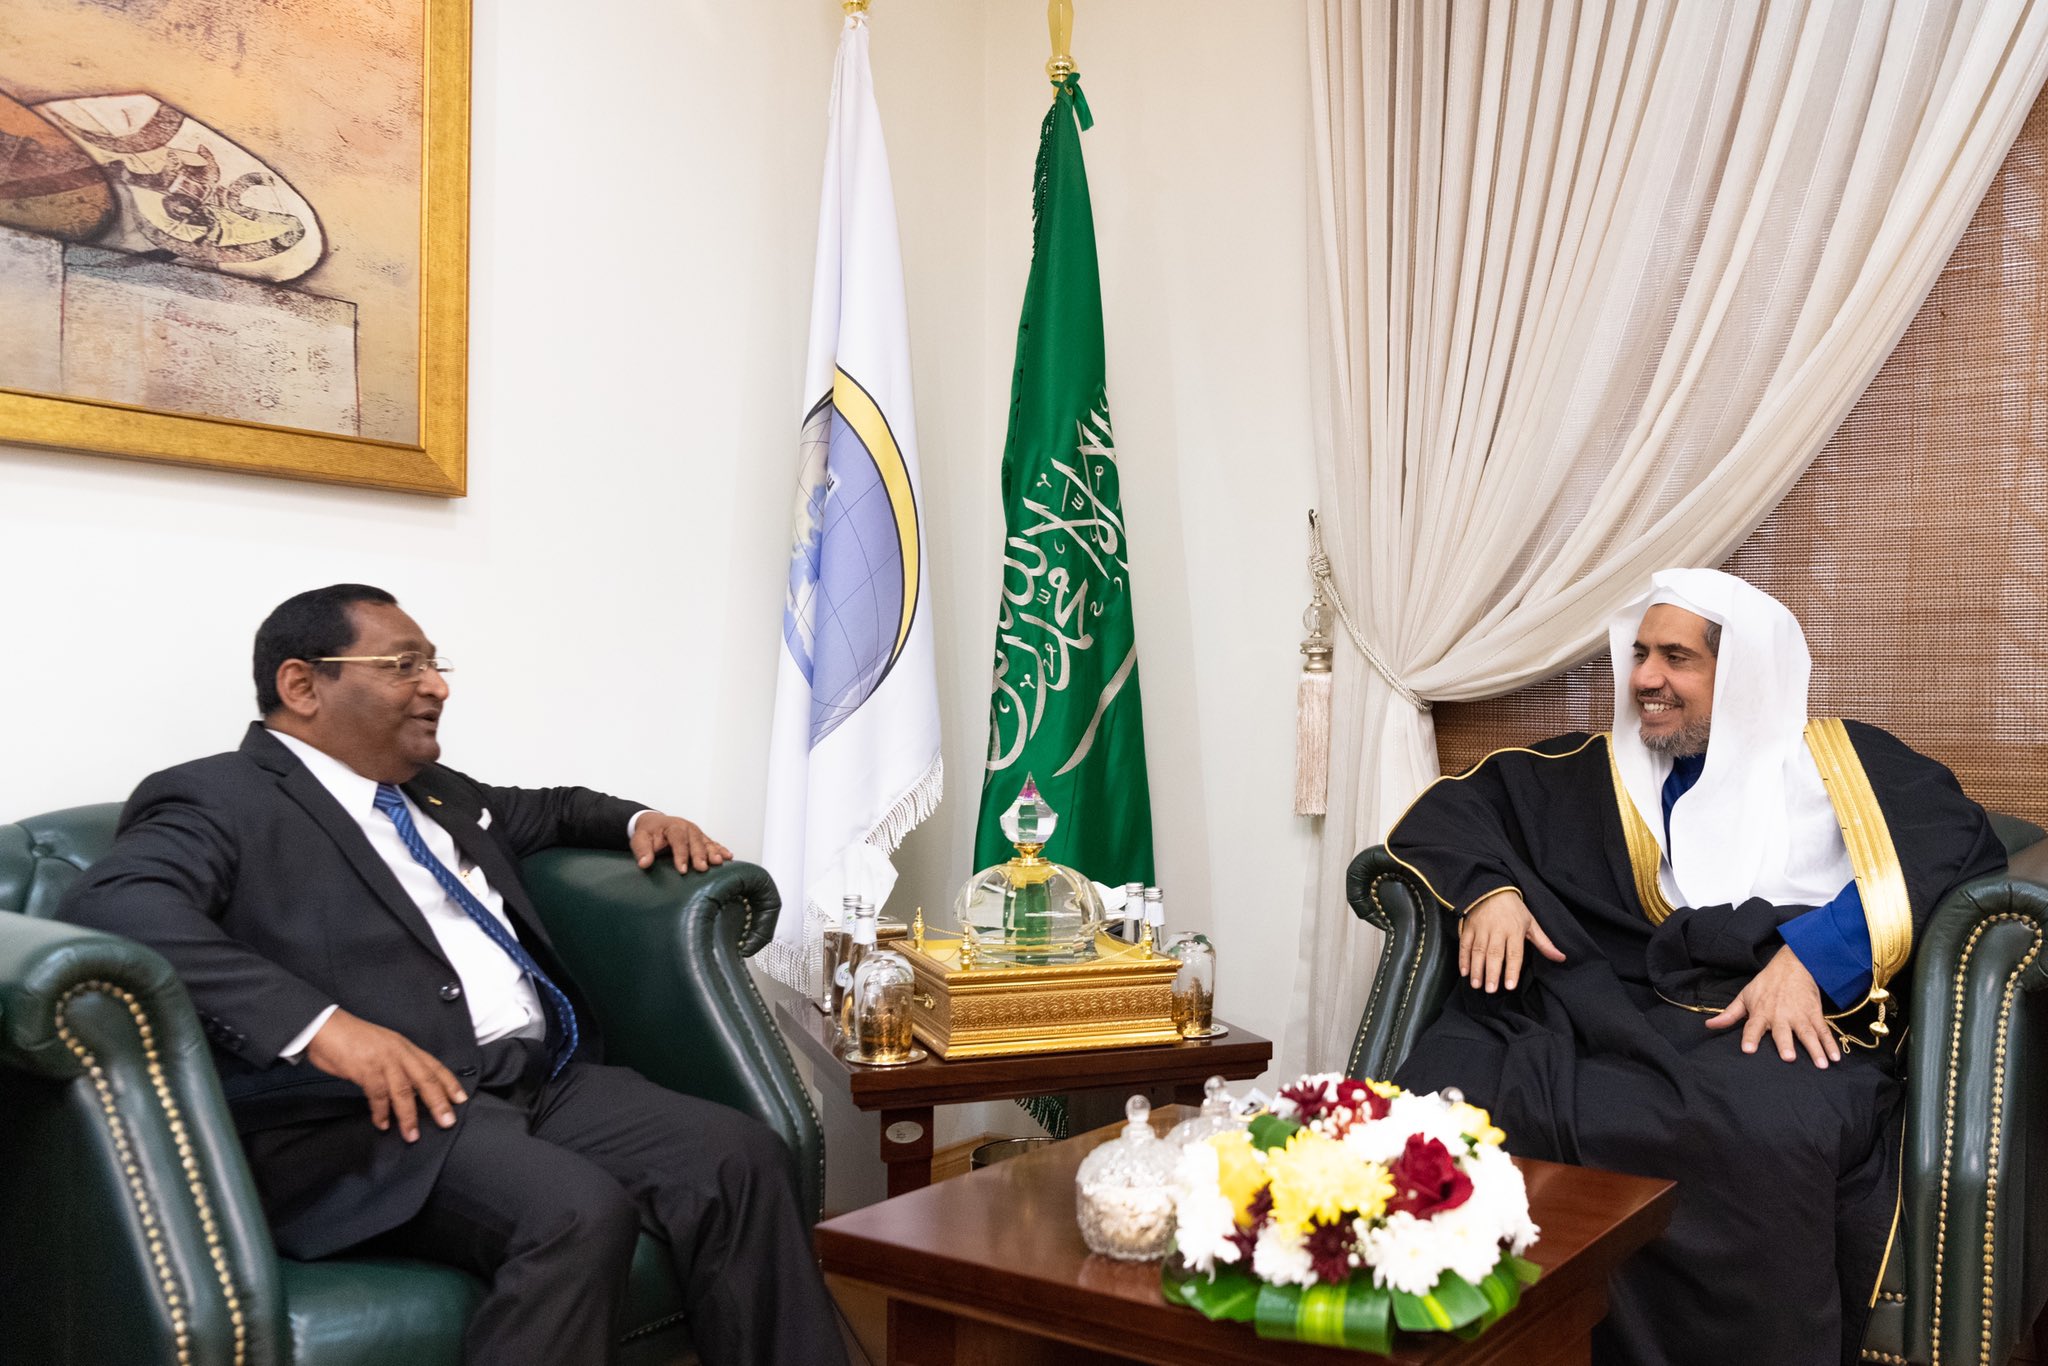 Mohammad Alissa a reçu l’Ambassadeur des Maldives auprès du Royaume qui considère que le congrès de la Ligue pour la paix entre les adeptes des religions au Sri Lanka organisé après les attentats terroristes a eu des effets très positifs au niveau national.